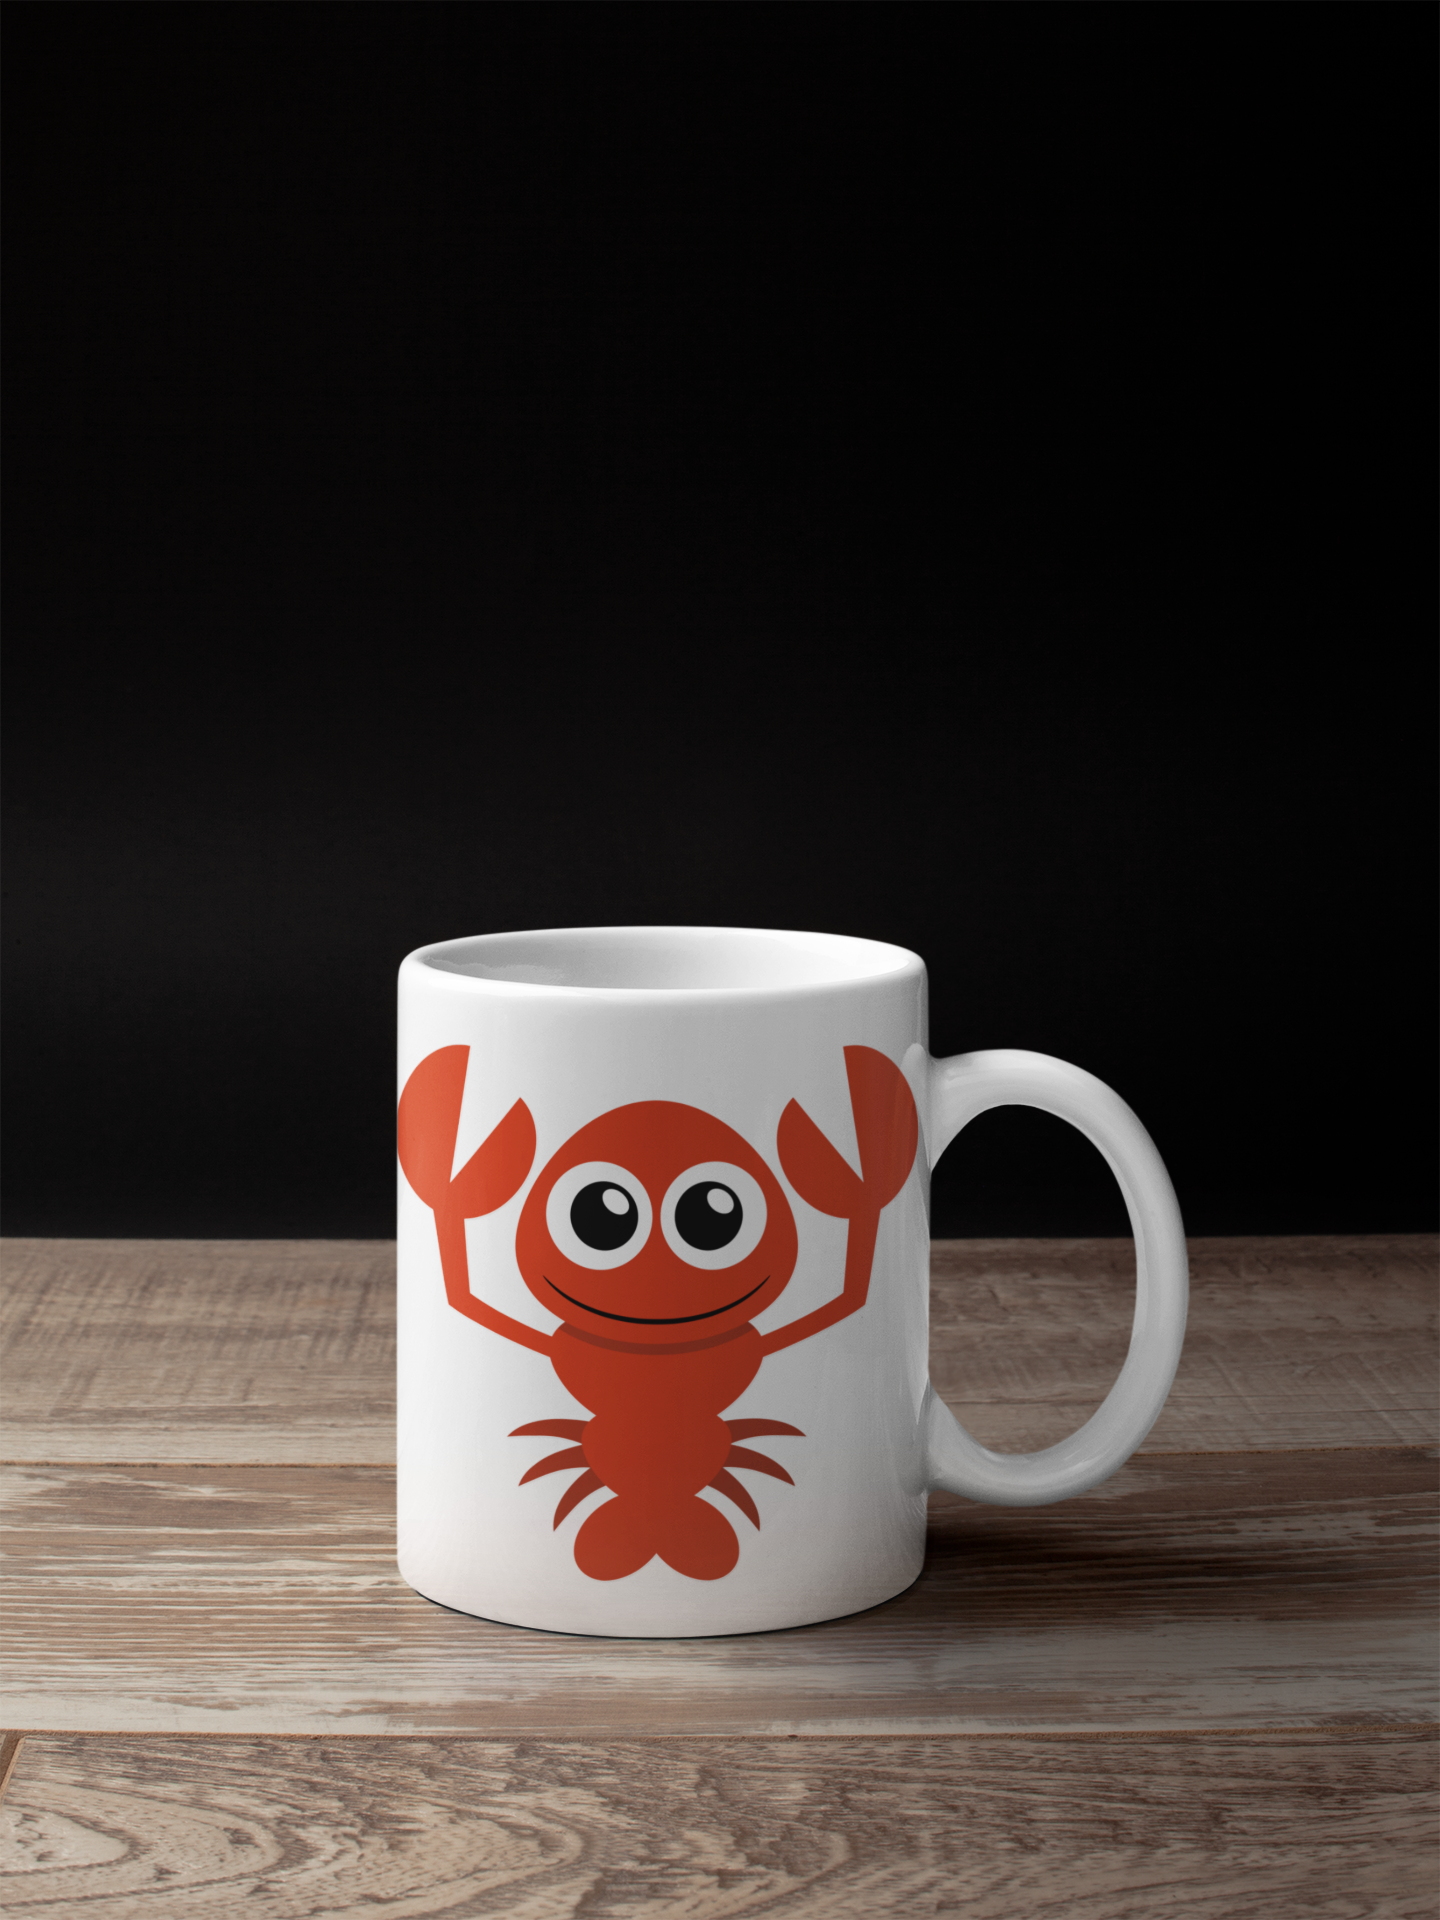 Adorable Gold Fish Sea Animal Personalised Your Name Gift Mug